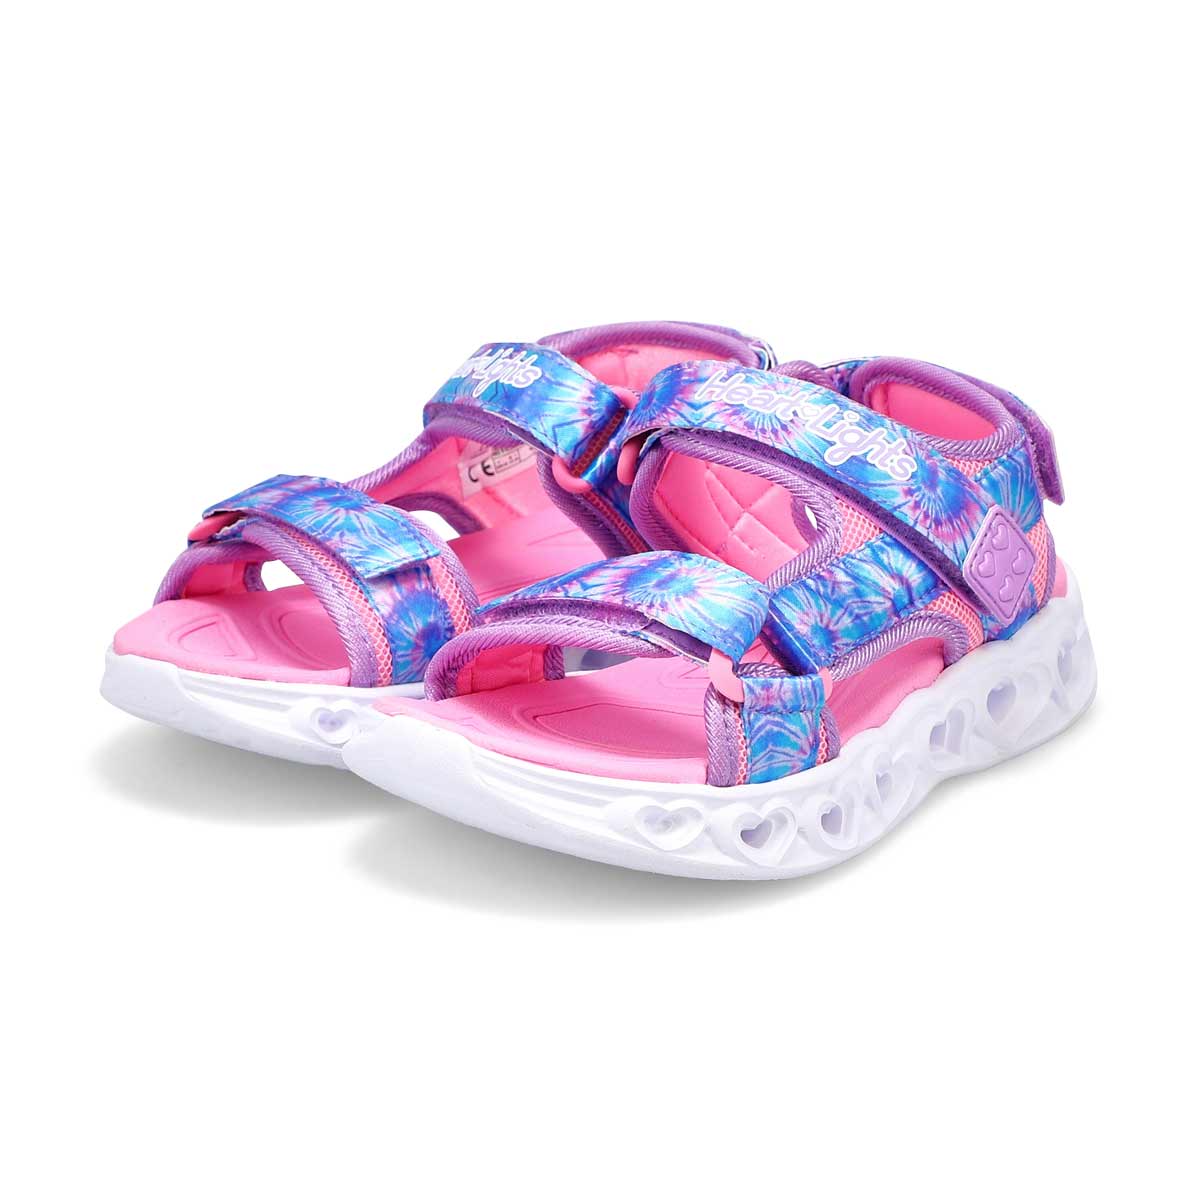 Skechers Girls' Heart Lights Sandal - Lavende | SoftMoc.com